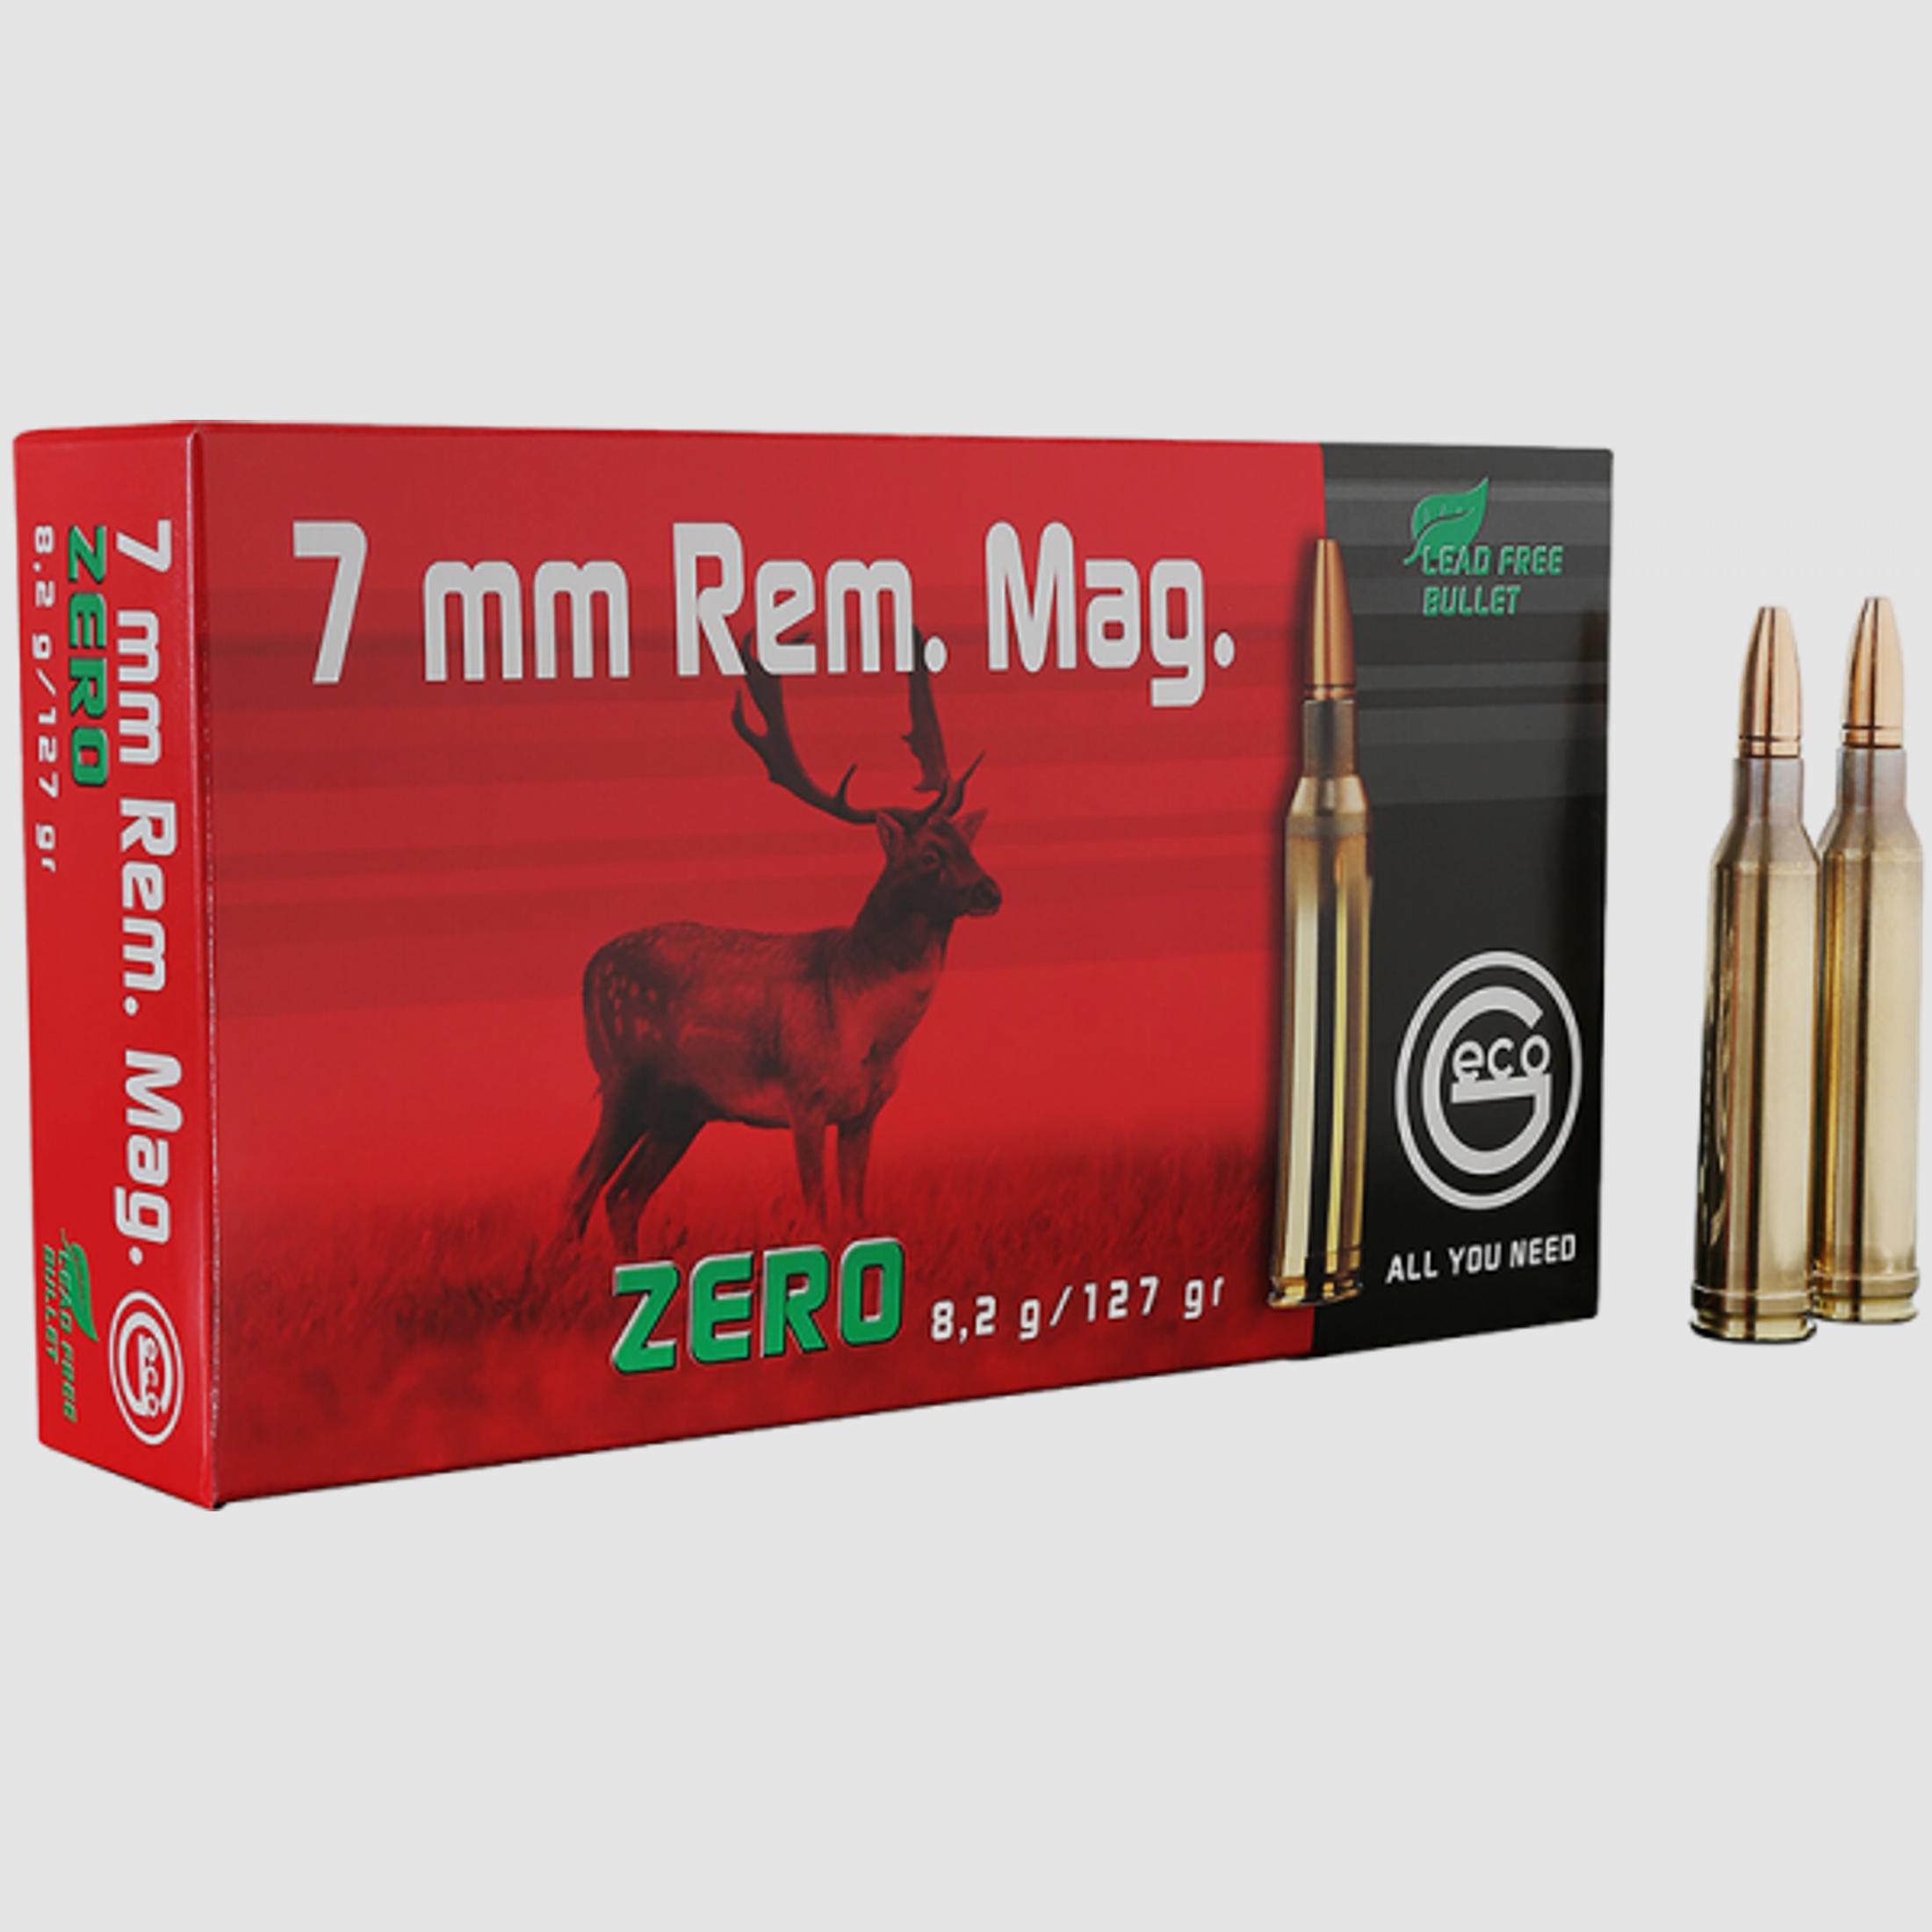 Geco Zero 7mm Rem Mag 127 grs Büchsenpatronen